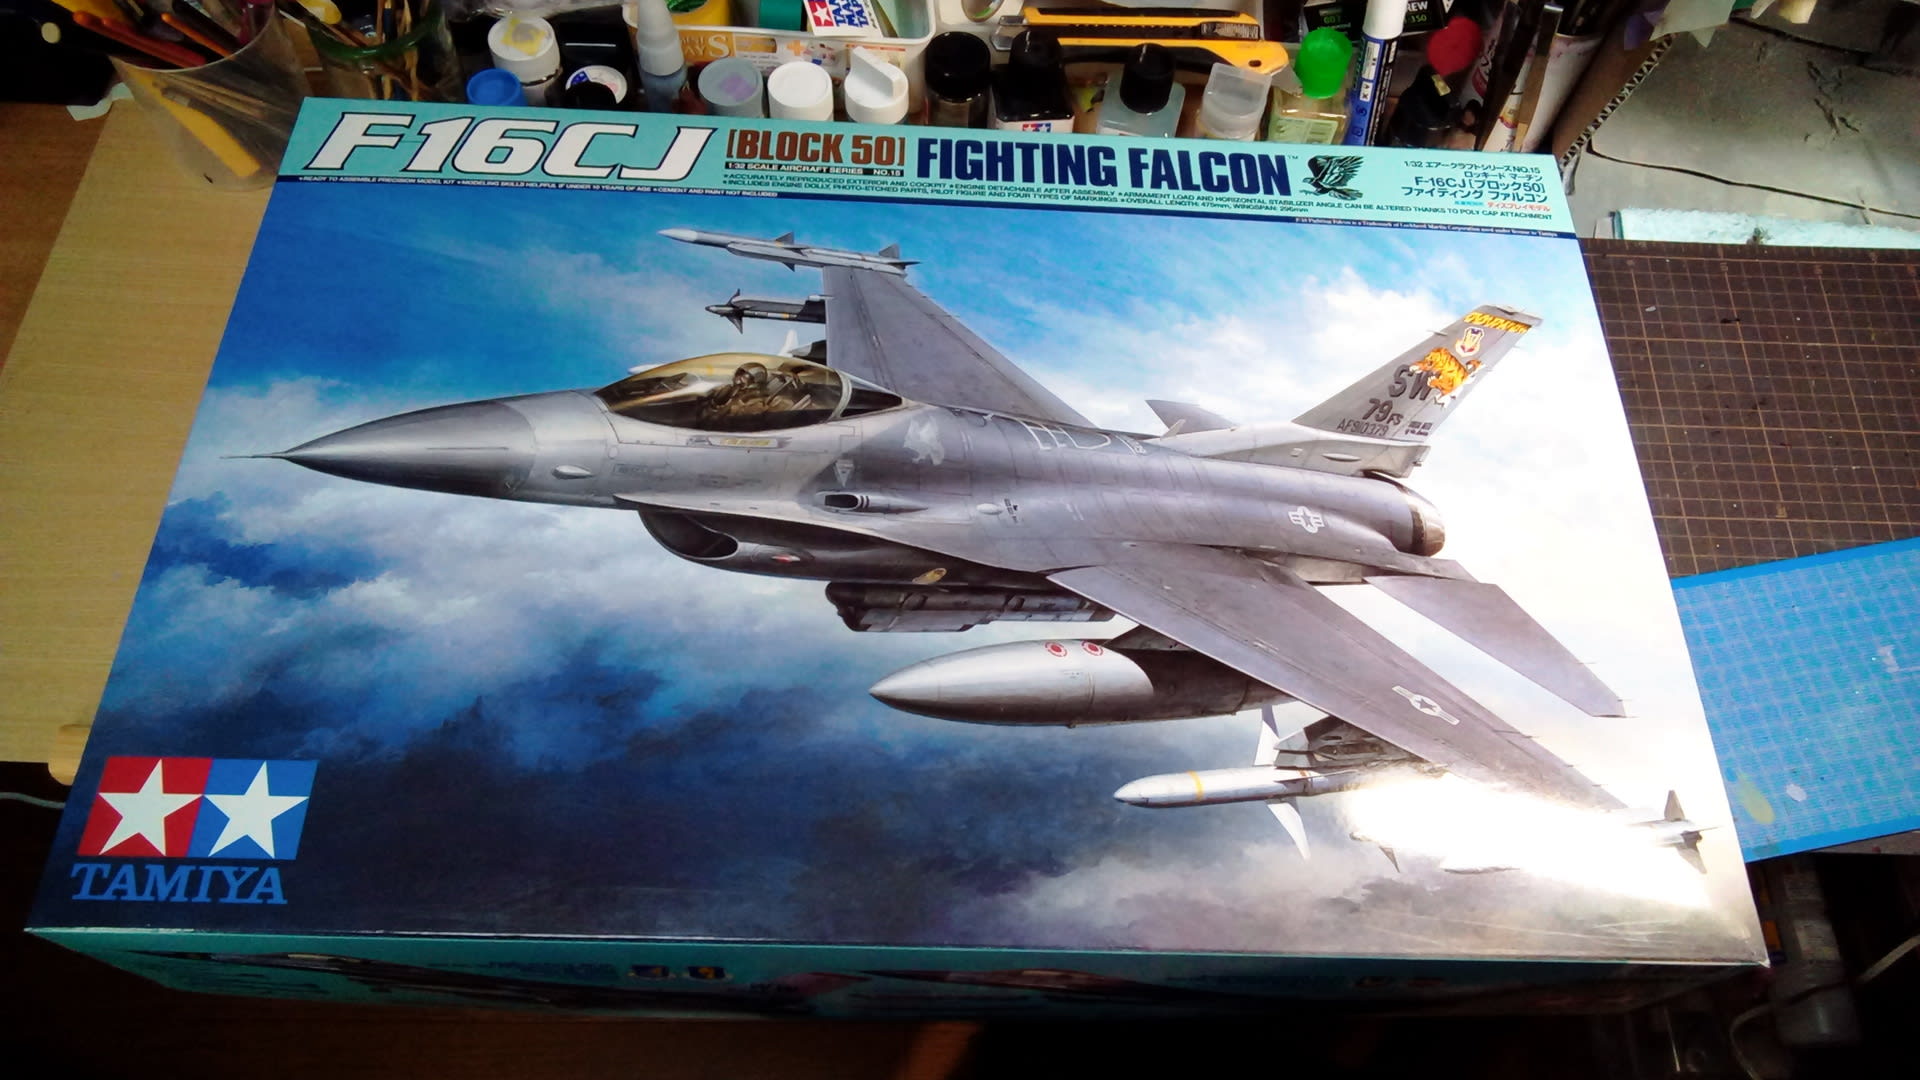 タミヤ 1/32 F-16CJ [BLOCK 50] 製作(1) - ART REAL アトリエ I-M